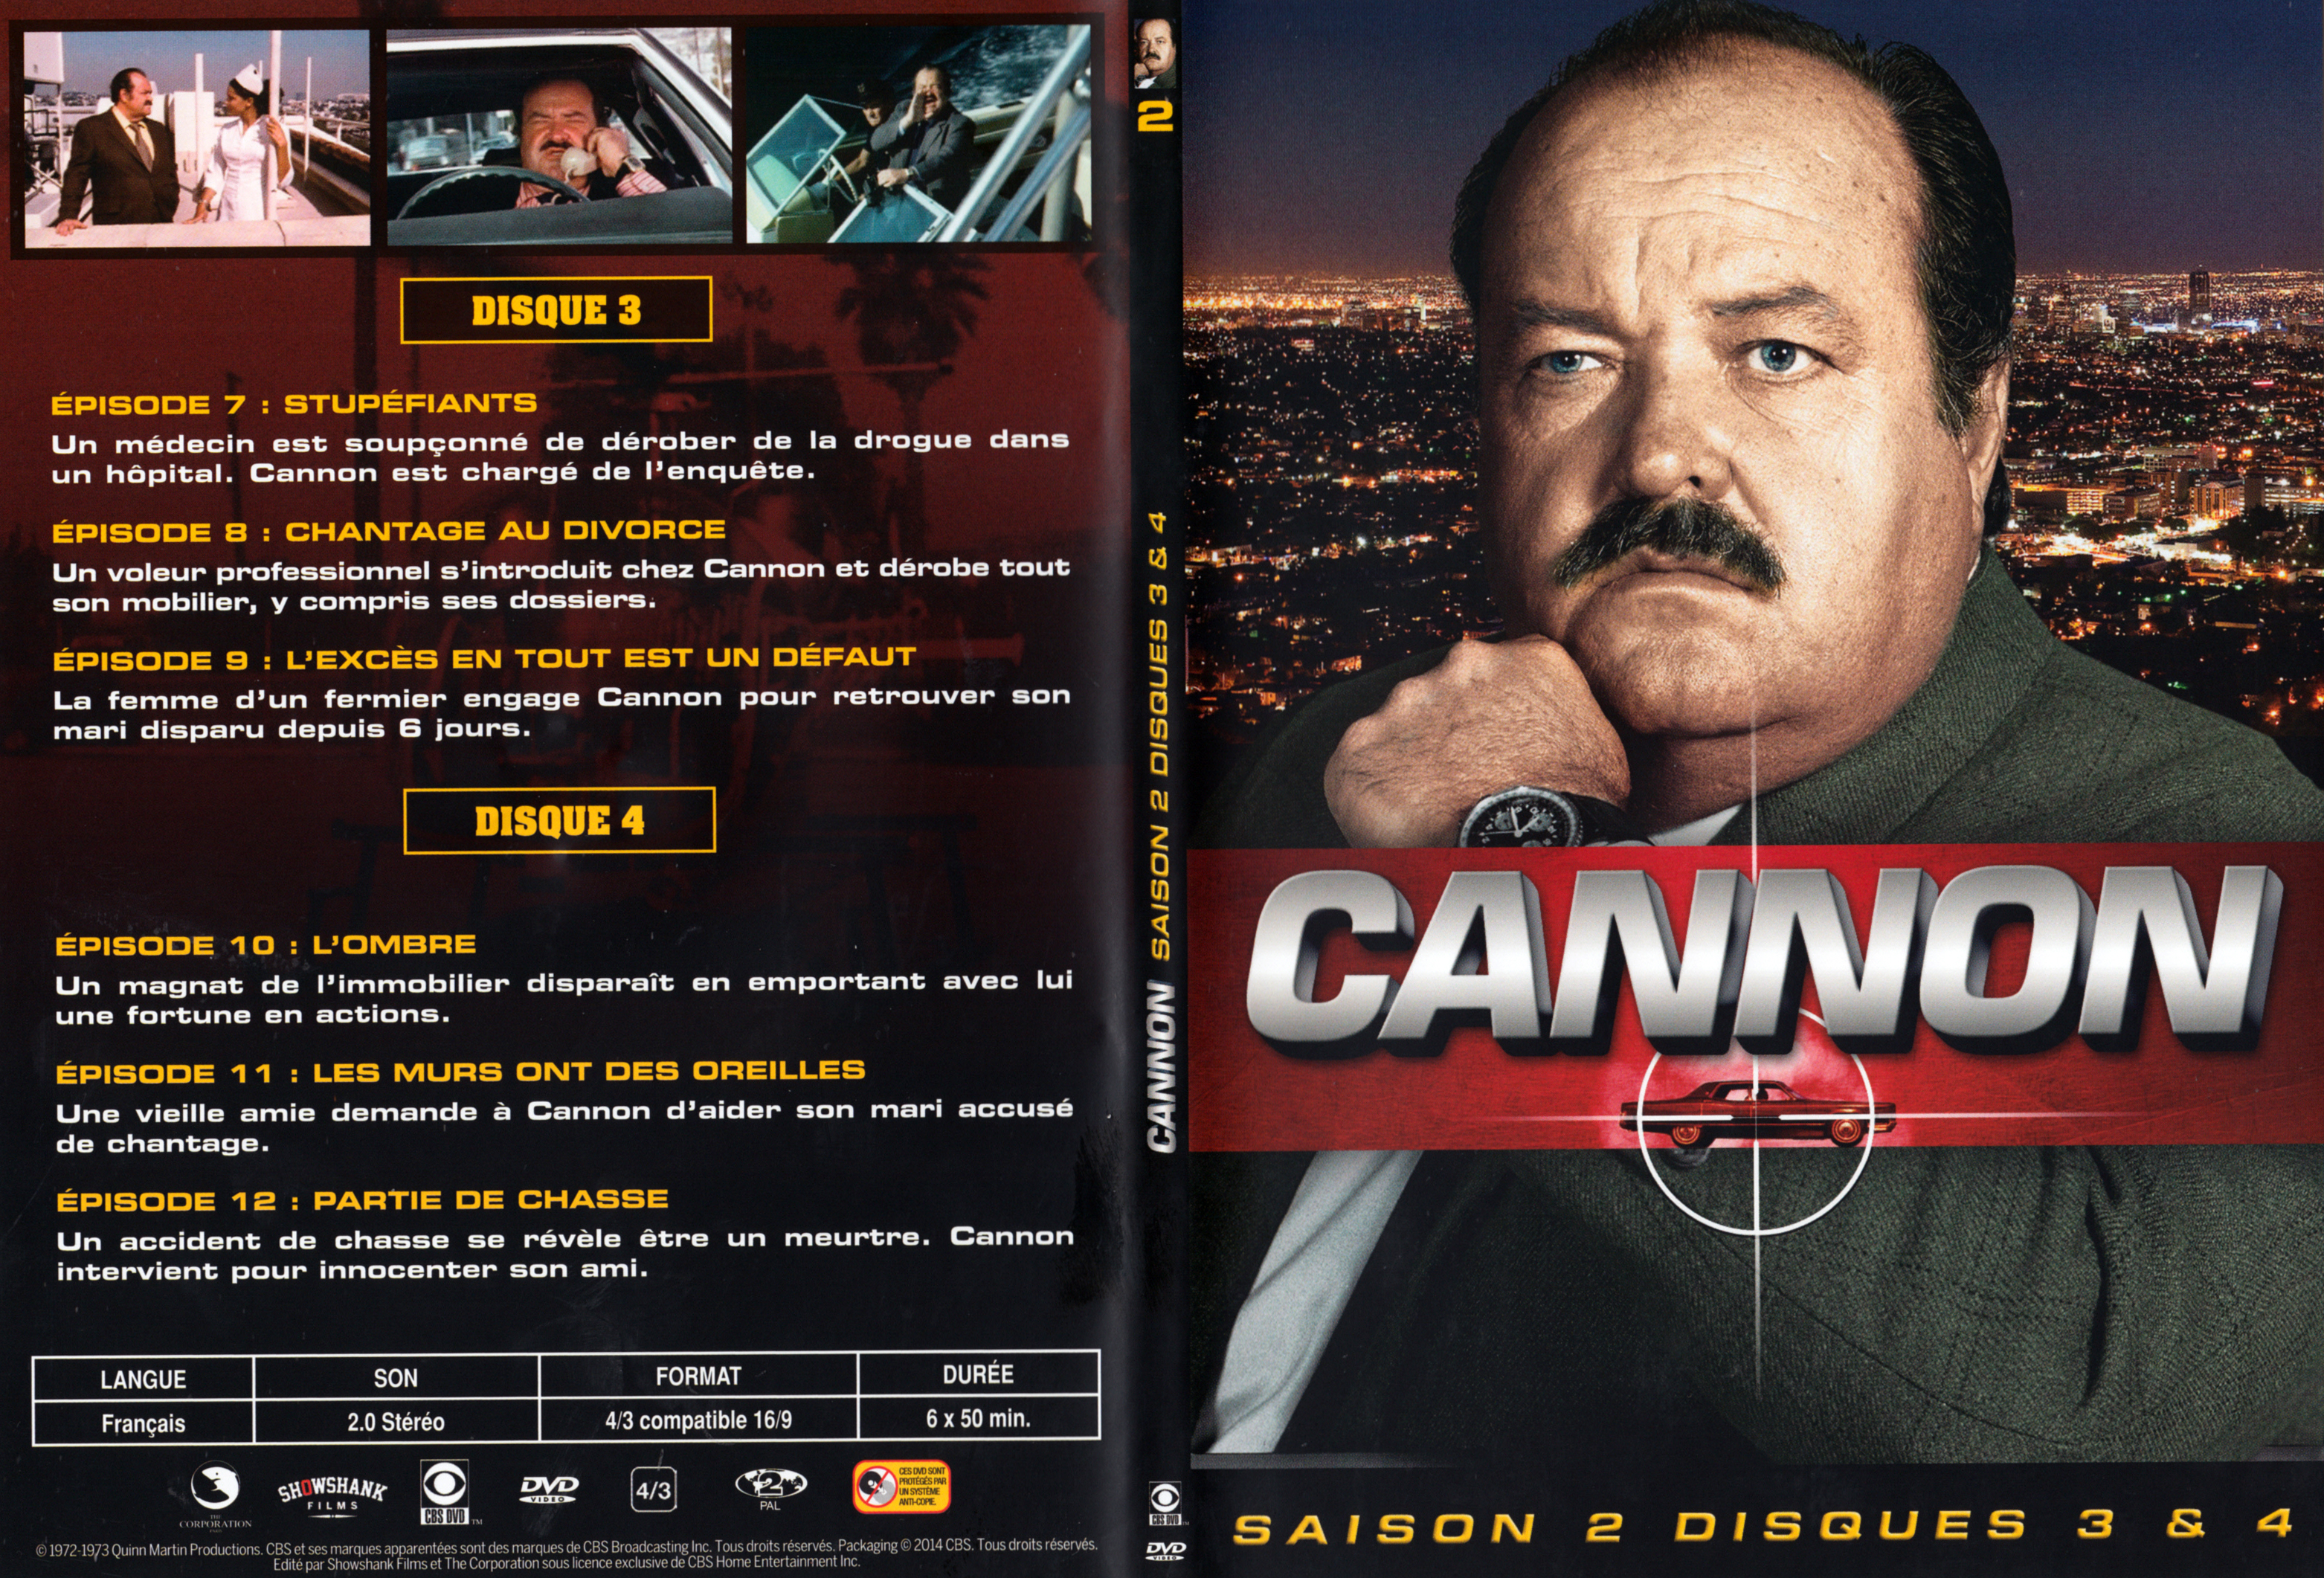 Jaquette DVD Cannon Saison 2 DVD 2